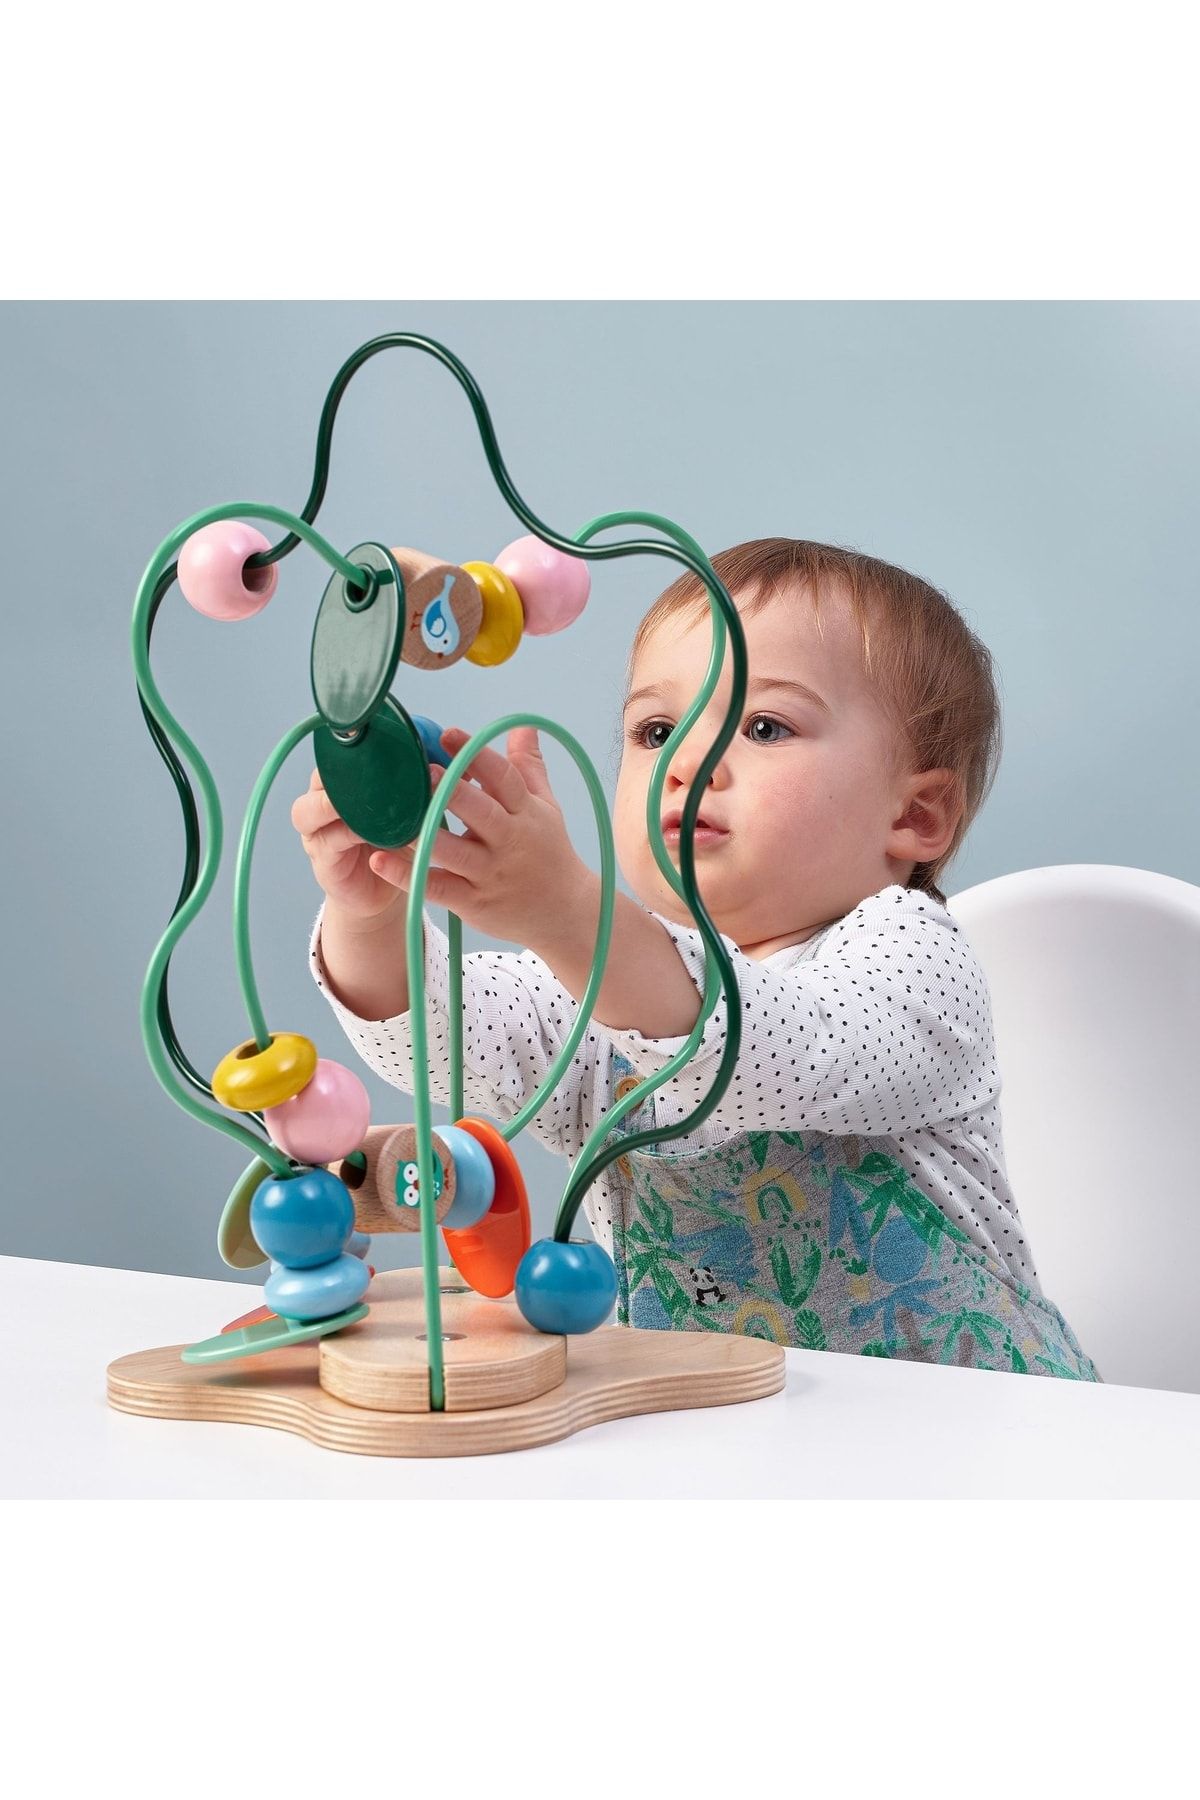 IKEA Uppsta Boncuklu Helezon Çok Renkli Bebek Çocuk Aktivite Gelişim Oyuncak Oyuncağı